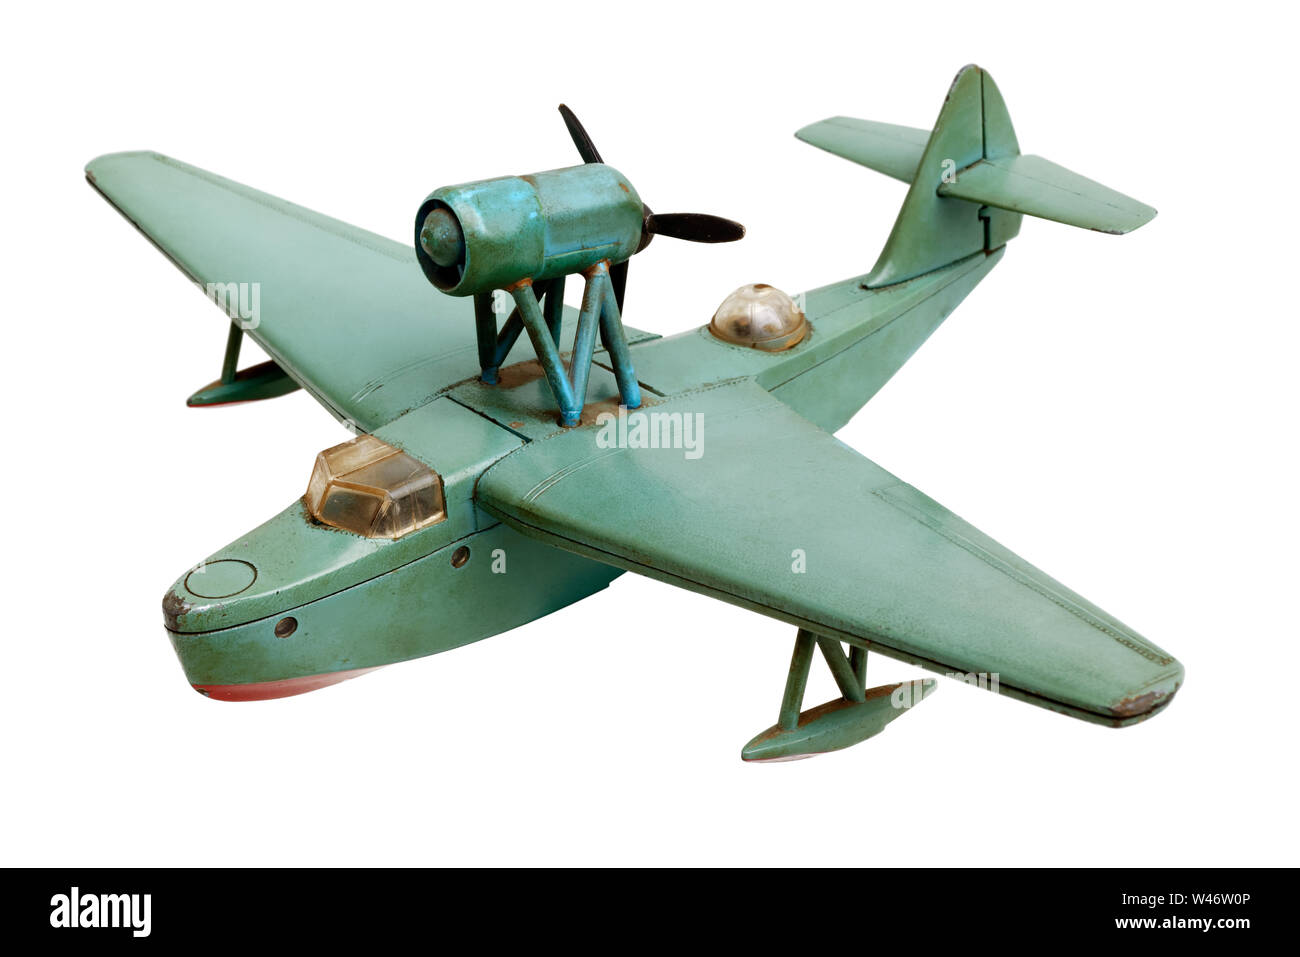 Oggetti isolati: vecchio generico idro aereo metallo verde modello in scala, isolati su sfondo bianco Foto Stock